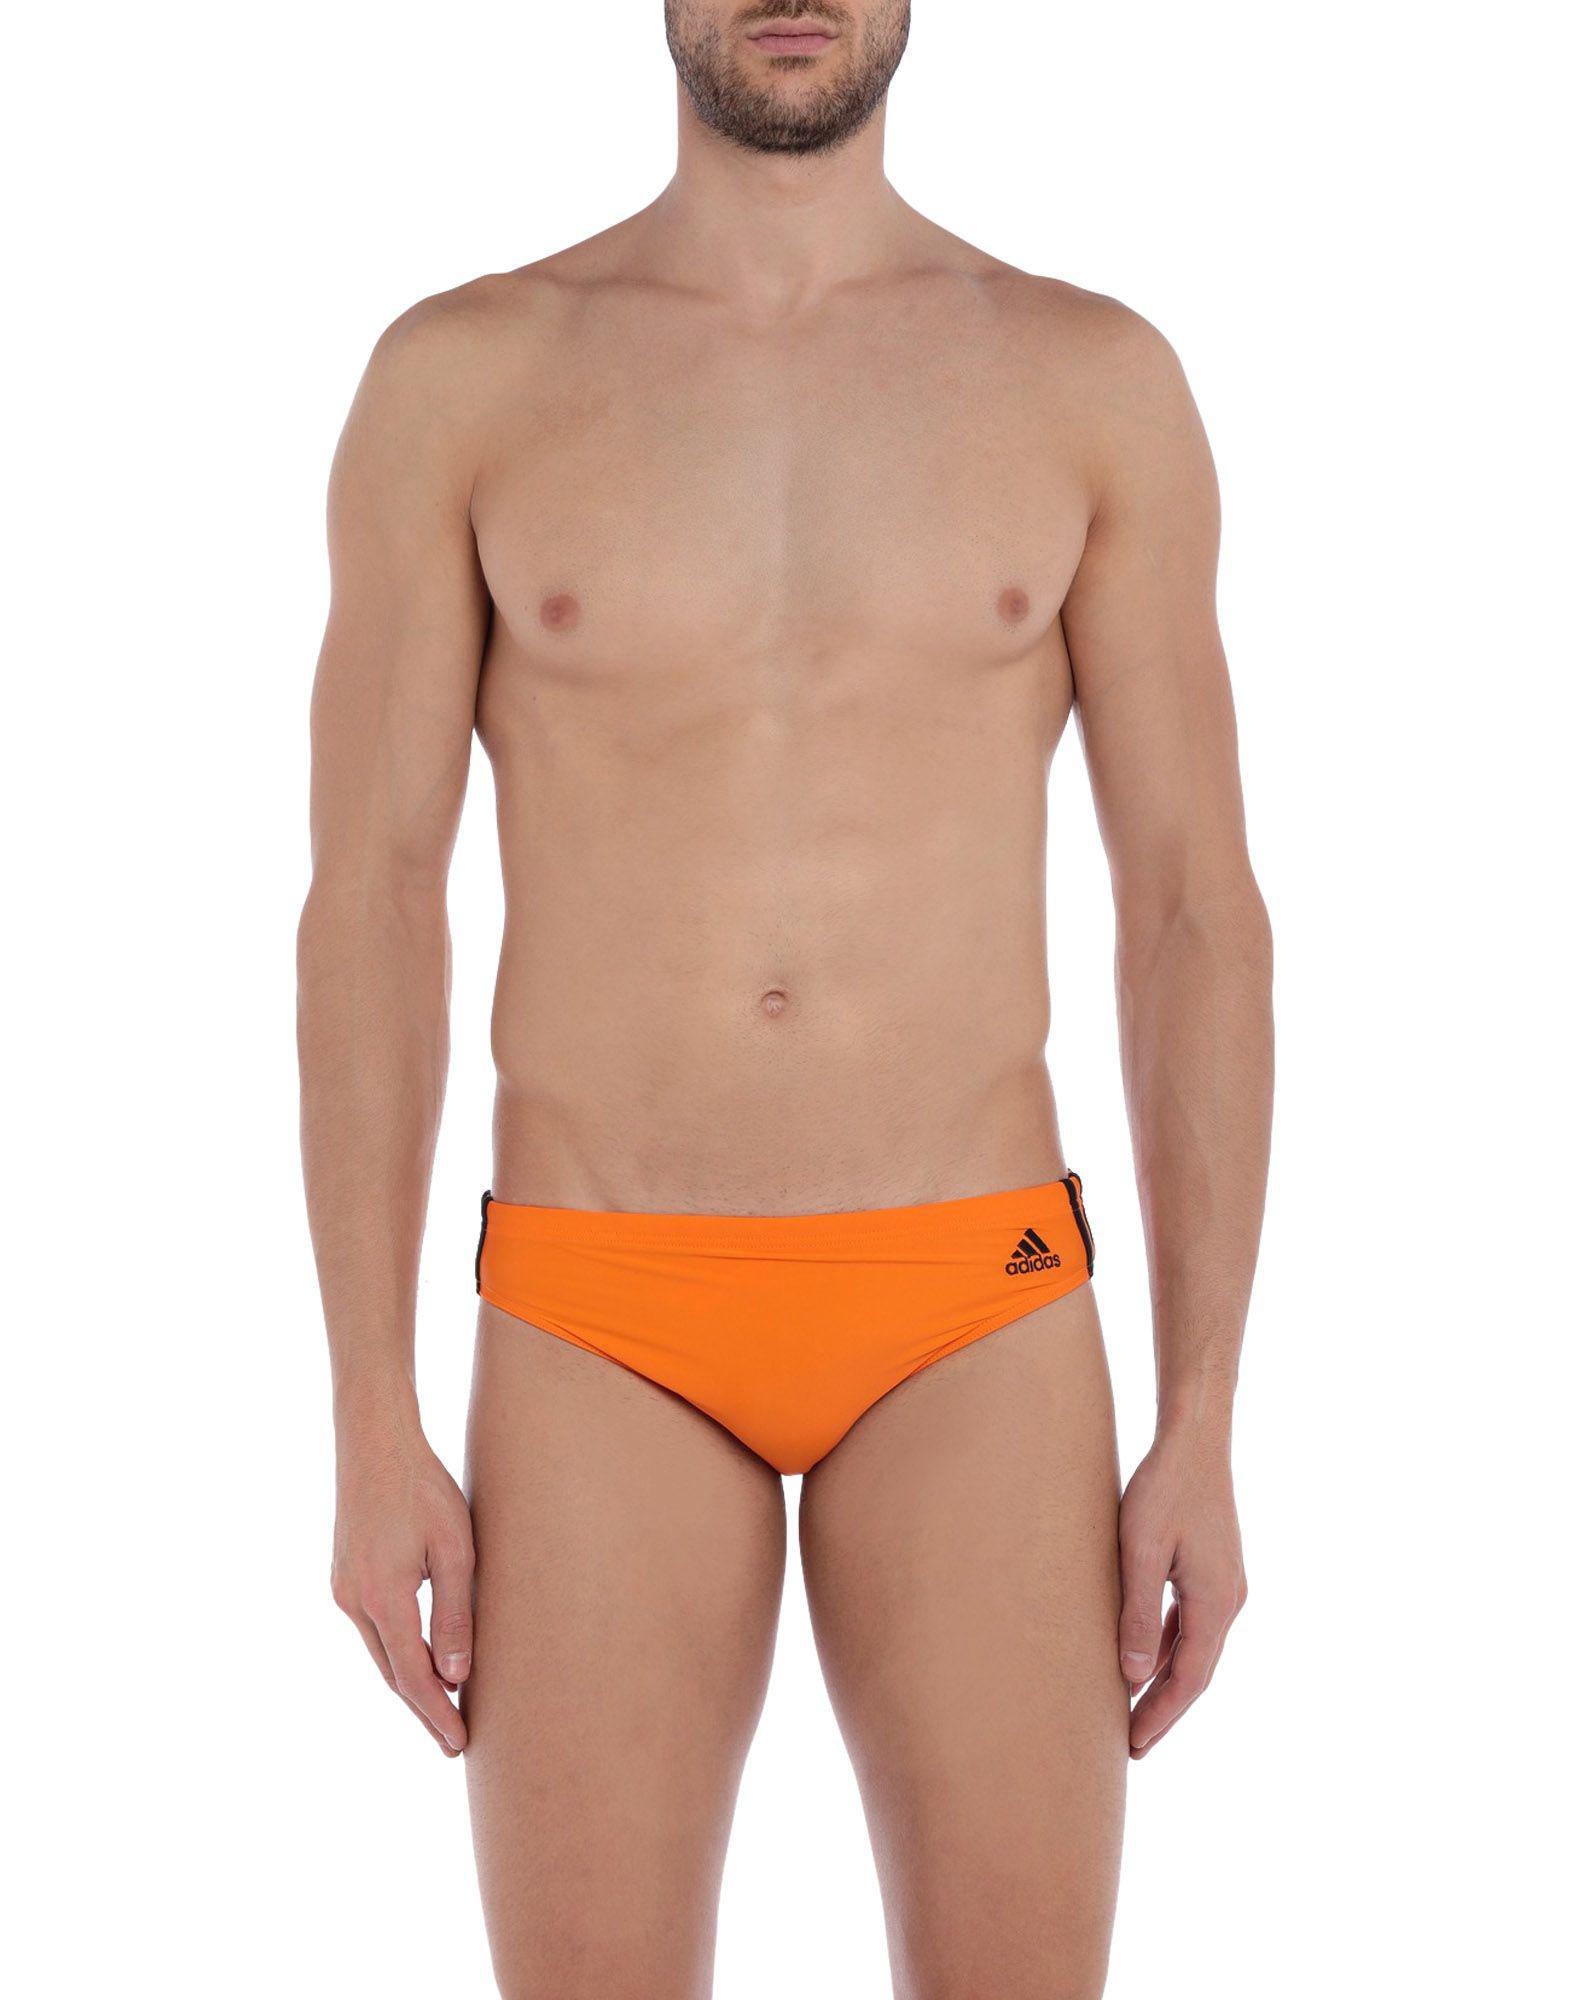 Adidas Swim Brief In Orange For Men Lyst